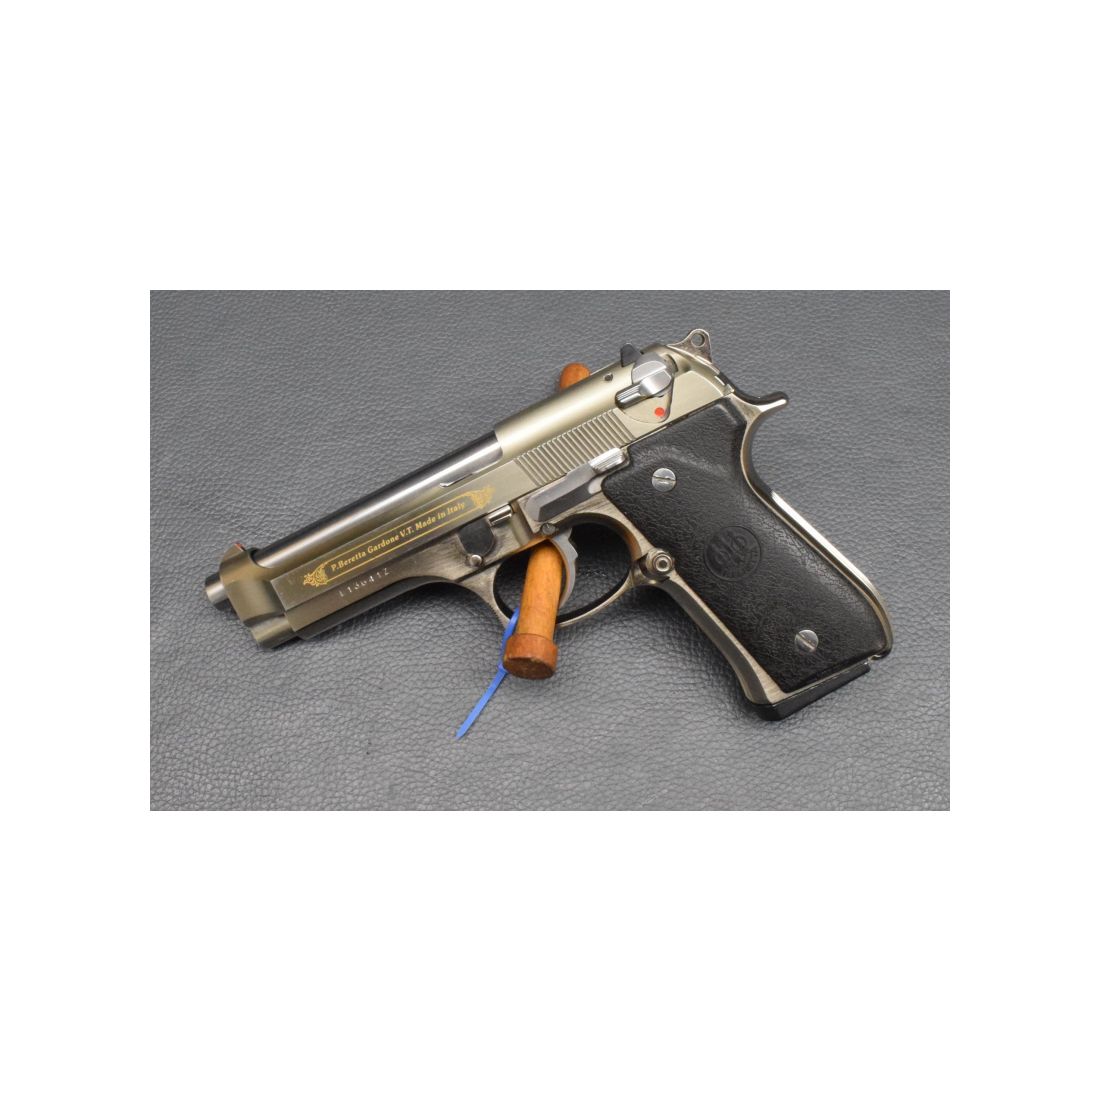 Beretta Pistole Mod. 92FS Golden Inox Kaliber 9mmPara, sehr gut